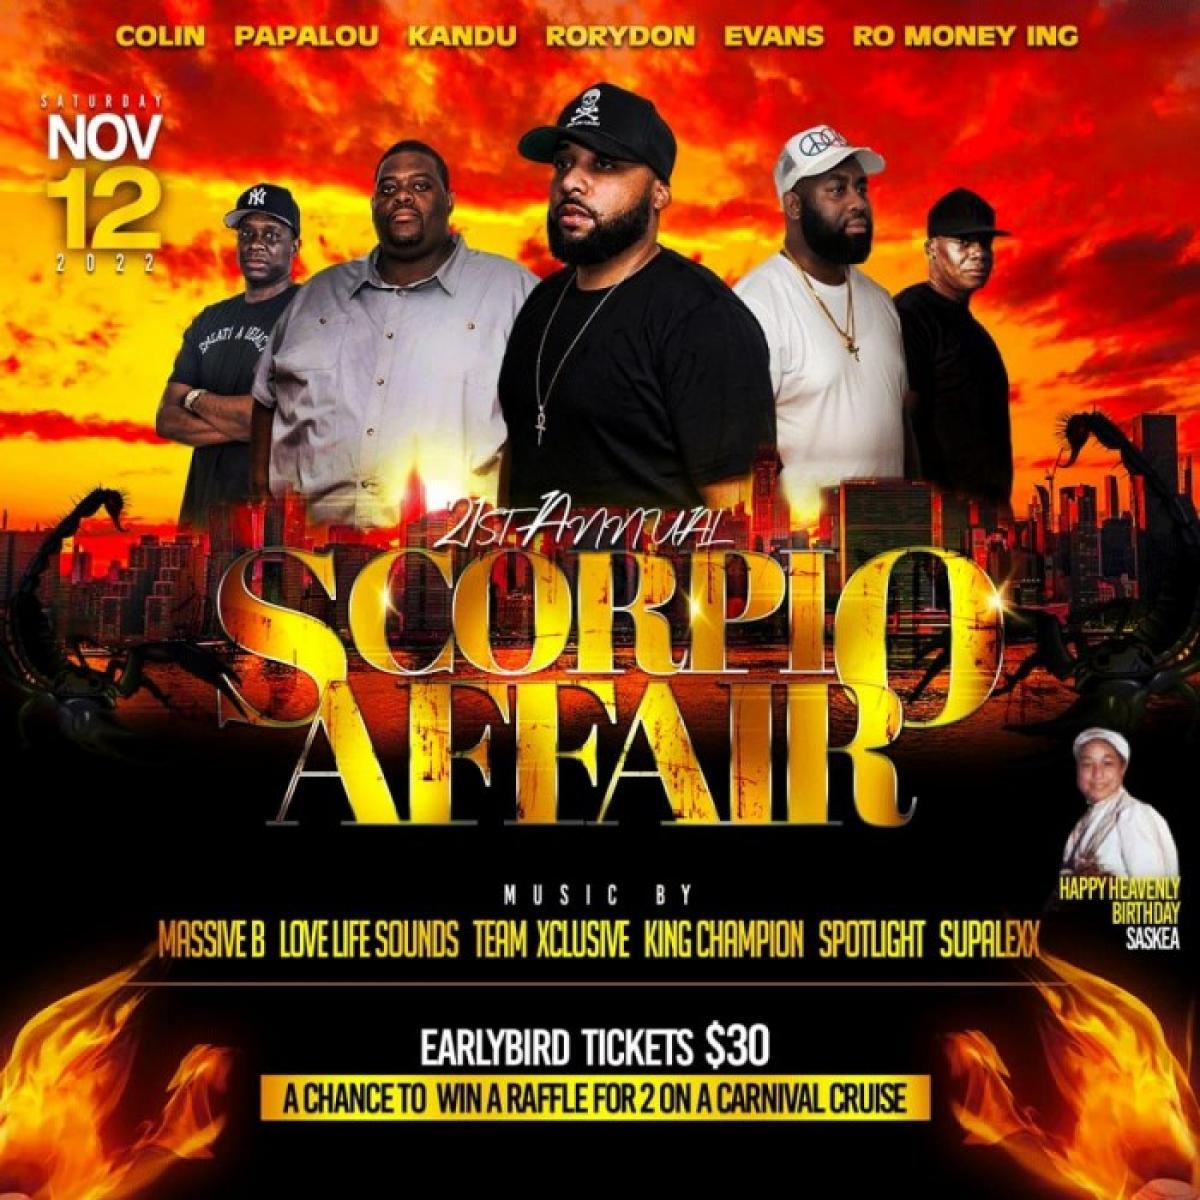  Scorpio Affair flyer or graphic.